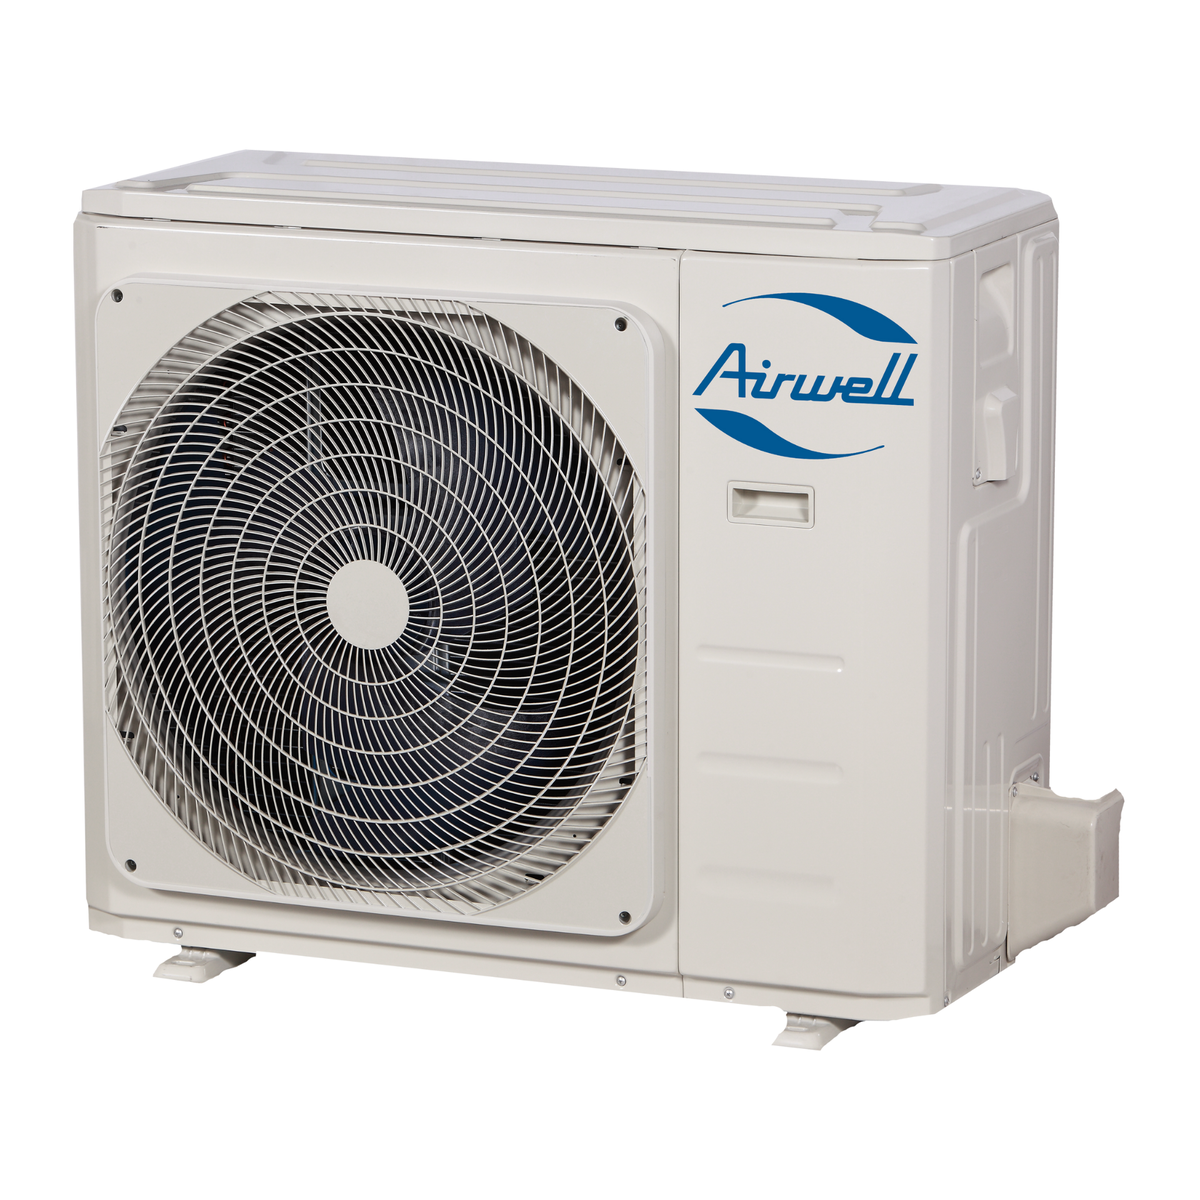 Oro kondicionierius/šilumos siurblys Airwell AURA, efektyvus šildymas iki -15°C, šaldymas 7,03 kW, šildymas 7,33 kW